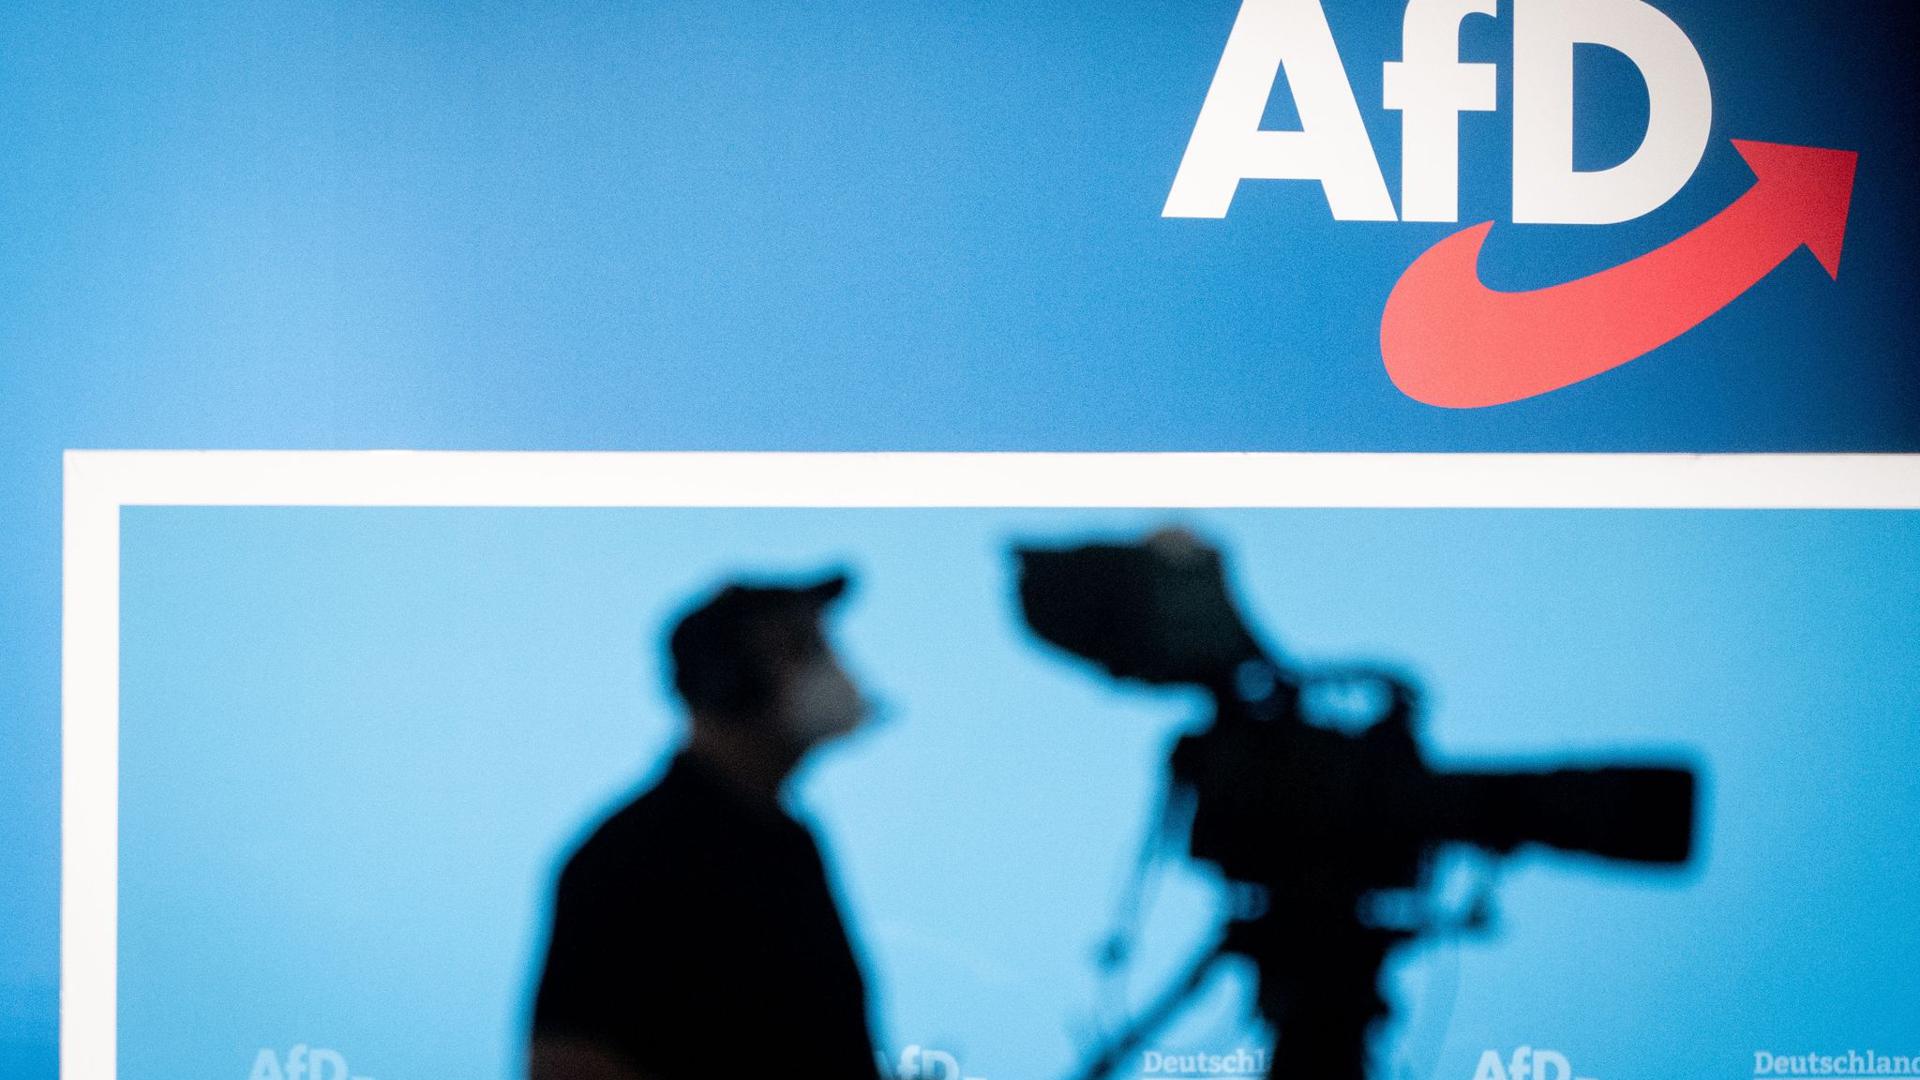 Die AfD plädiert für die Gründung einer Akademie für deutsche Sprache nach dem Vorbild der Académie française. Dies soll der Stärkung der „kulturellen Identität“ dienen.